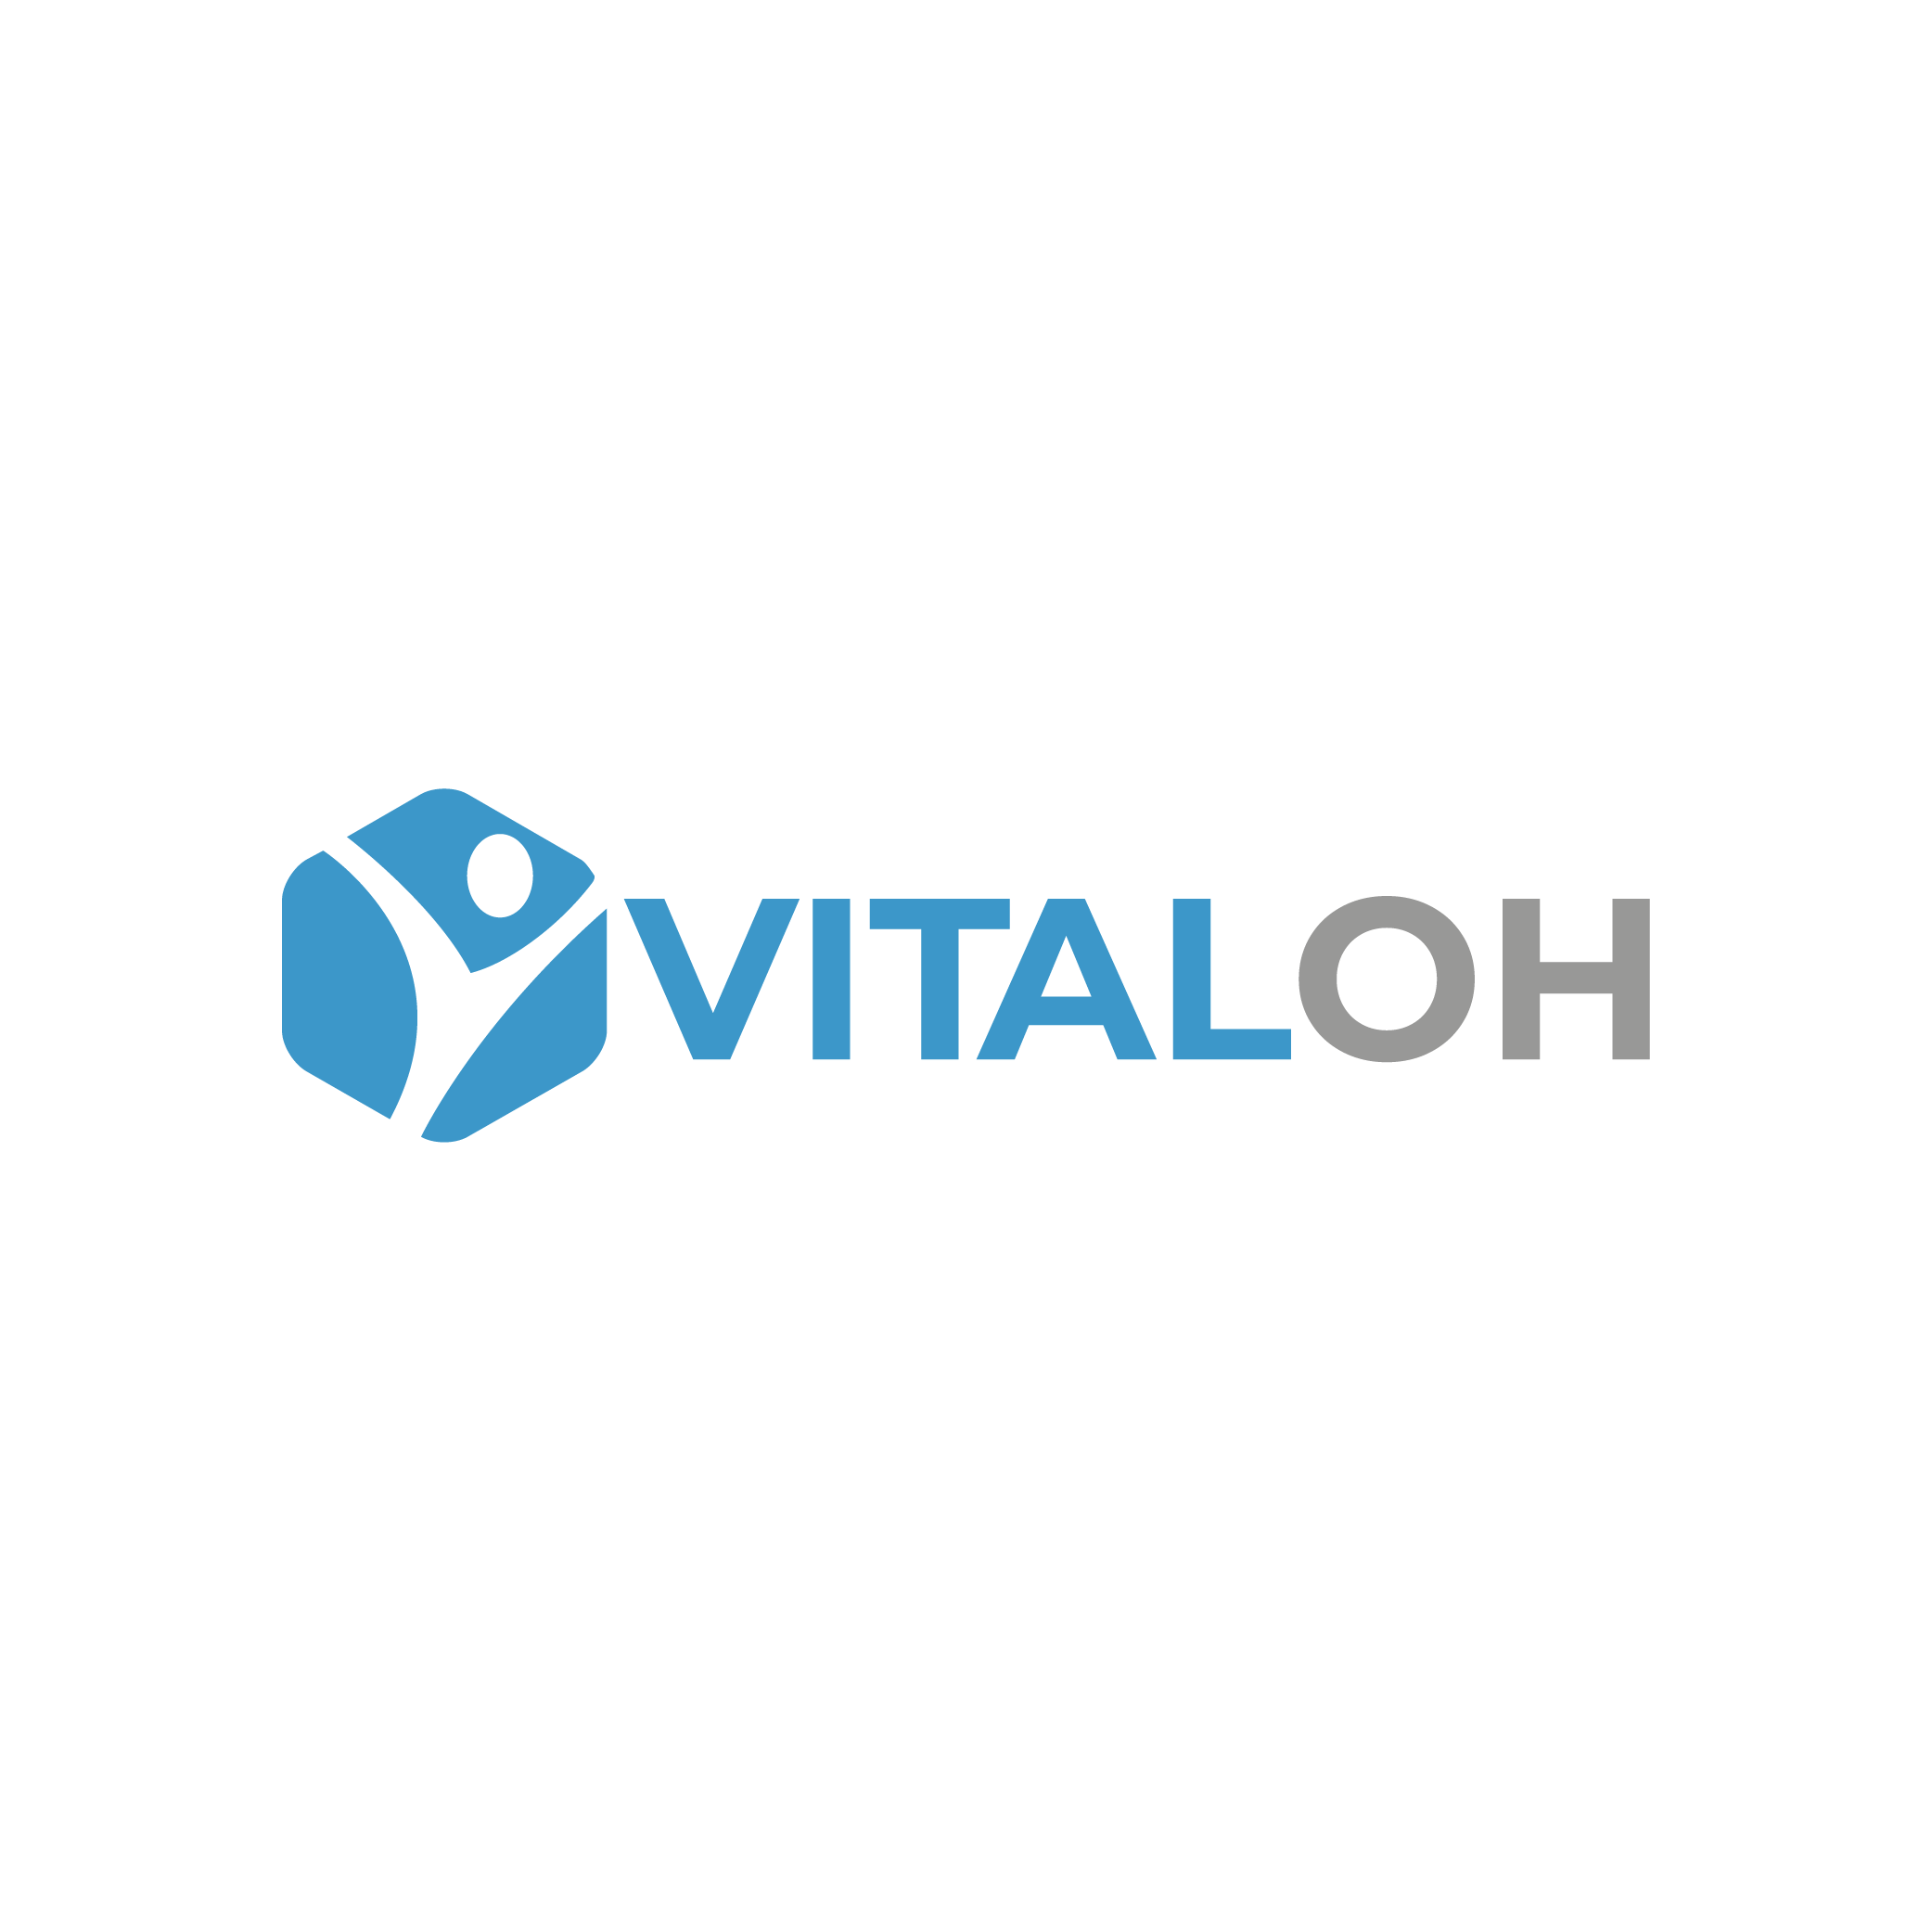 Vital OH logo